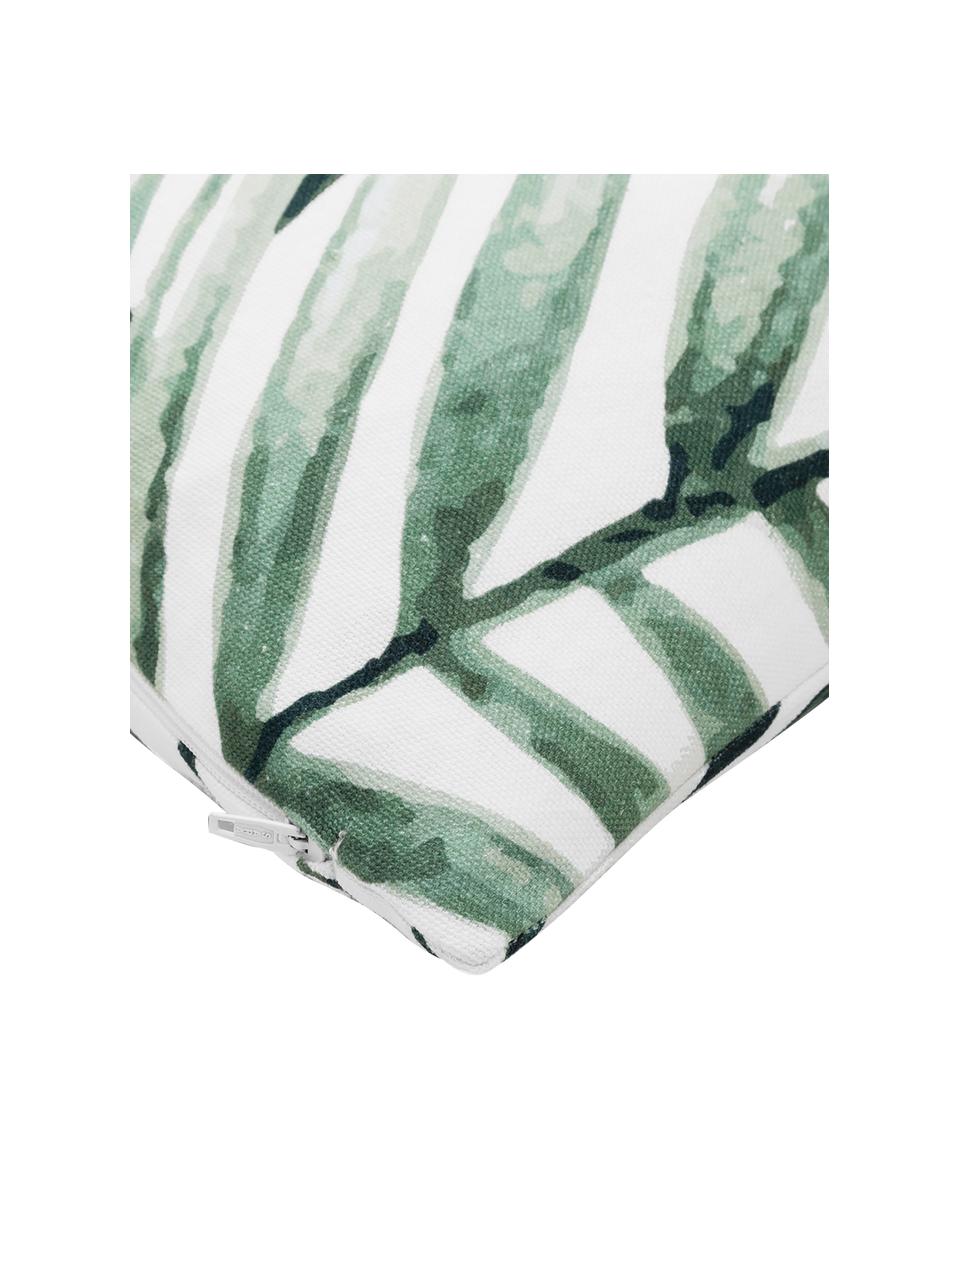 Katoenen kussenhoes Coast met bladpatroon, 100% katoen, Groen, wit, B 40 x L 40 cm